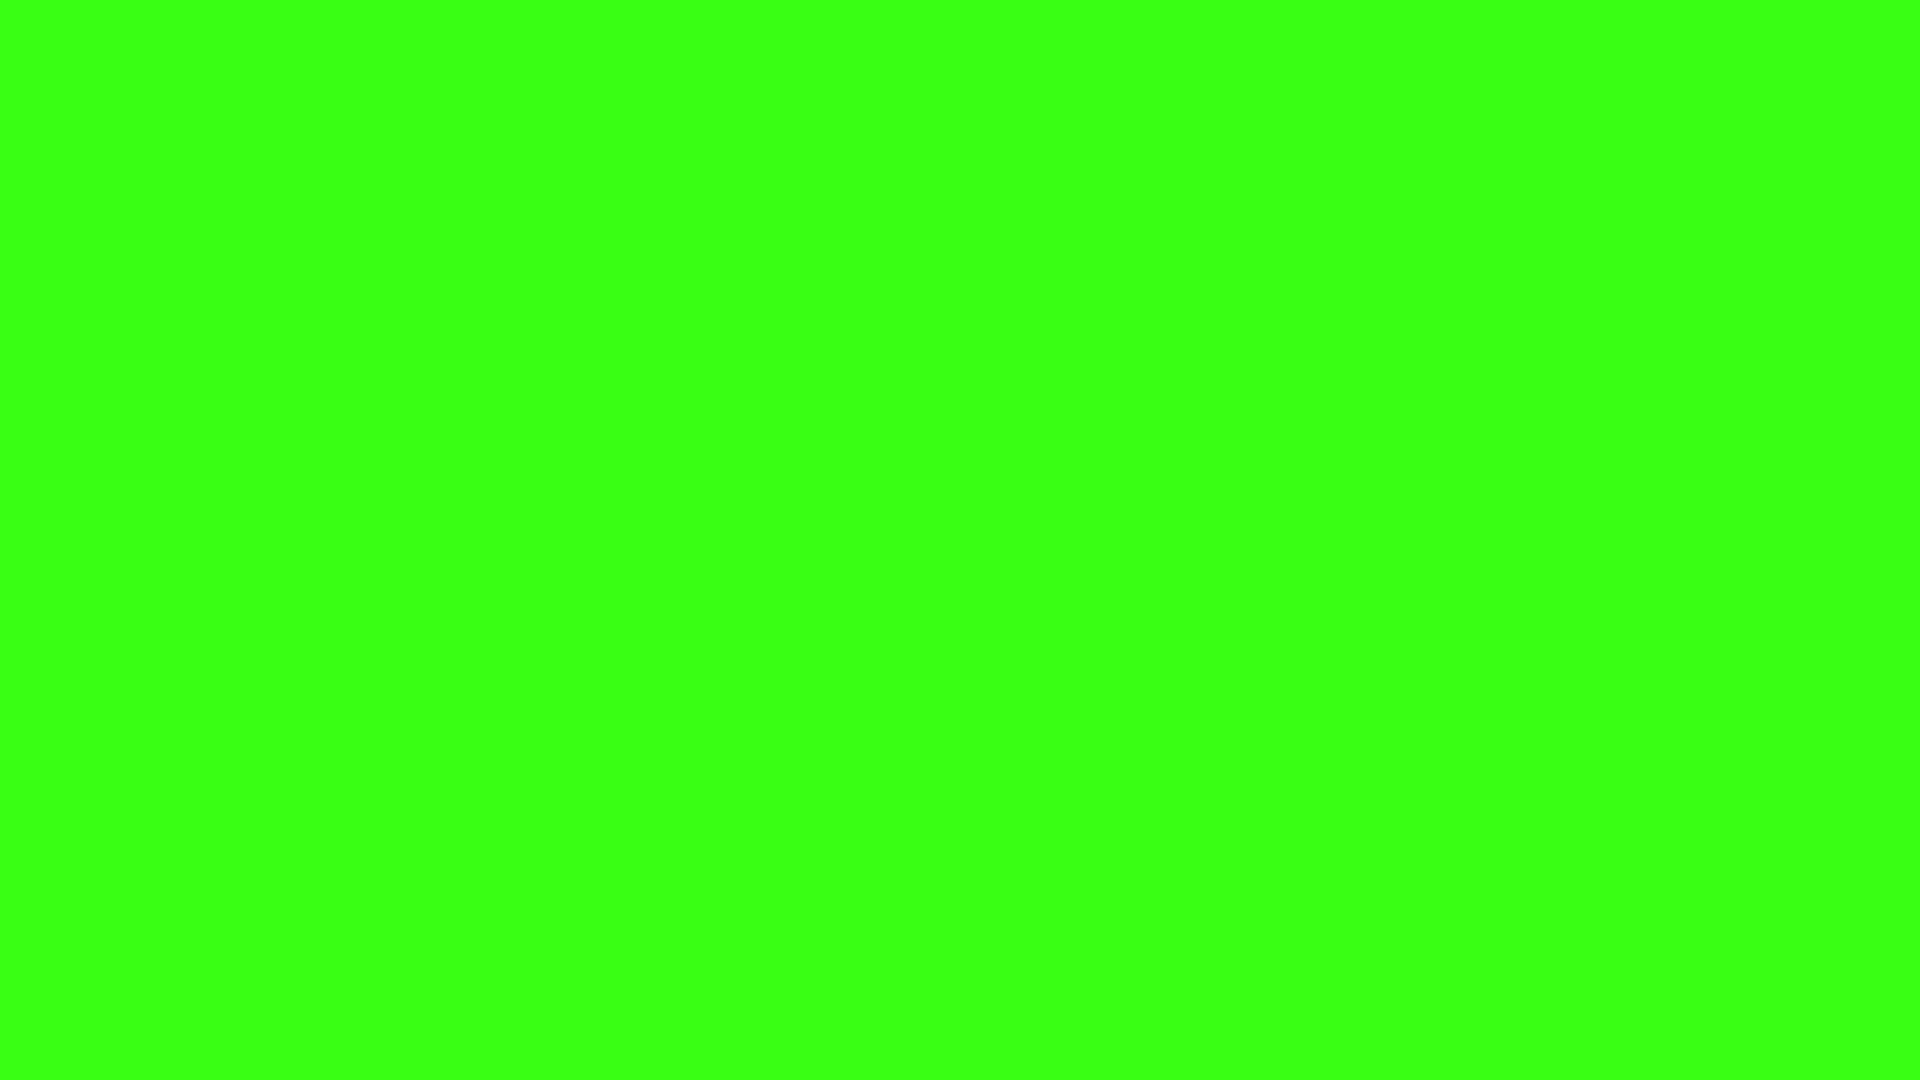 Hình nền neon xanh lá cây rực rở này sẽ mang đến cho bạn sự tươi mới và năng lượng khi sử dụng máy tính của mình. Với hiệu ứng ánh sáng rực rỡ, bạn sẽ không thể nhịn được sự cảm thông và thích thú khi nhìn vào màn hình của mình.